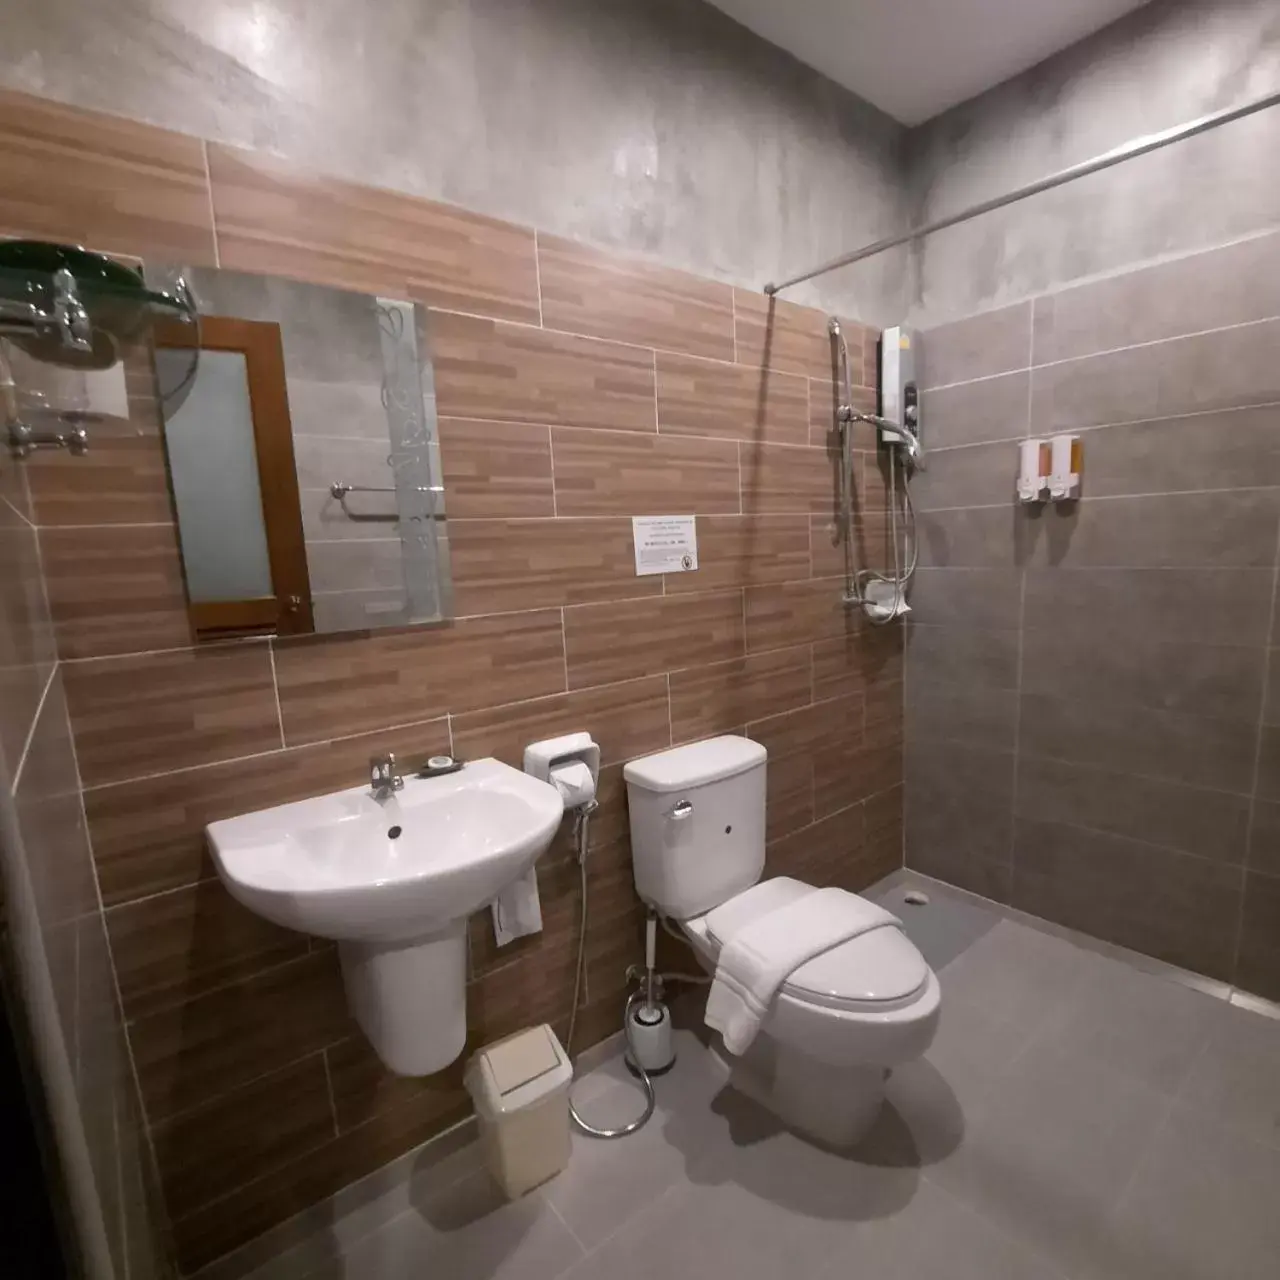 Bathroom in Namu Hotel